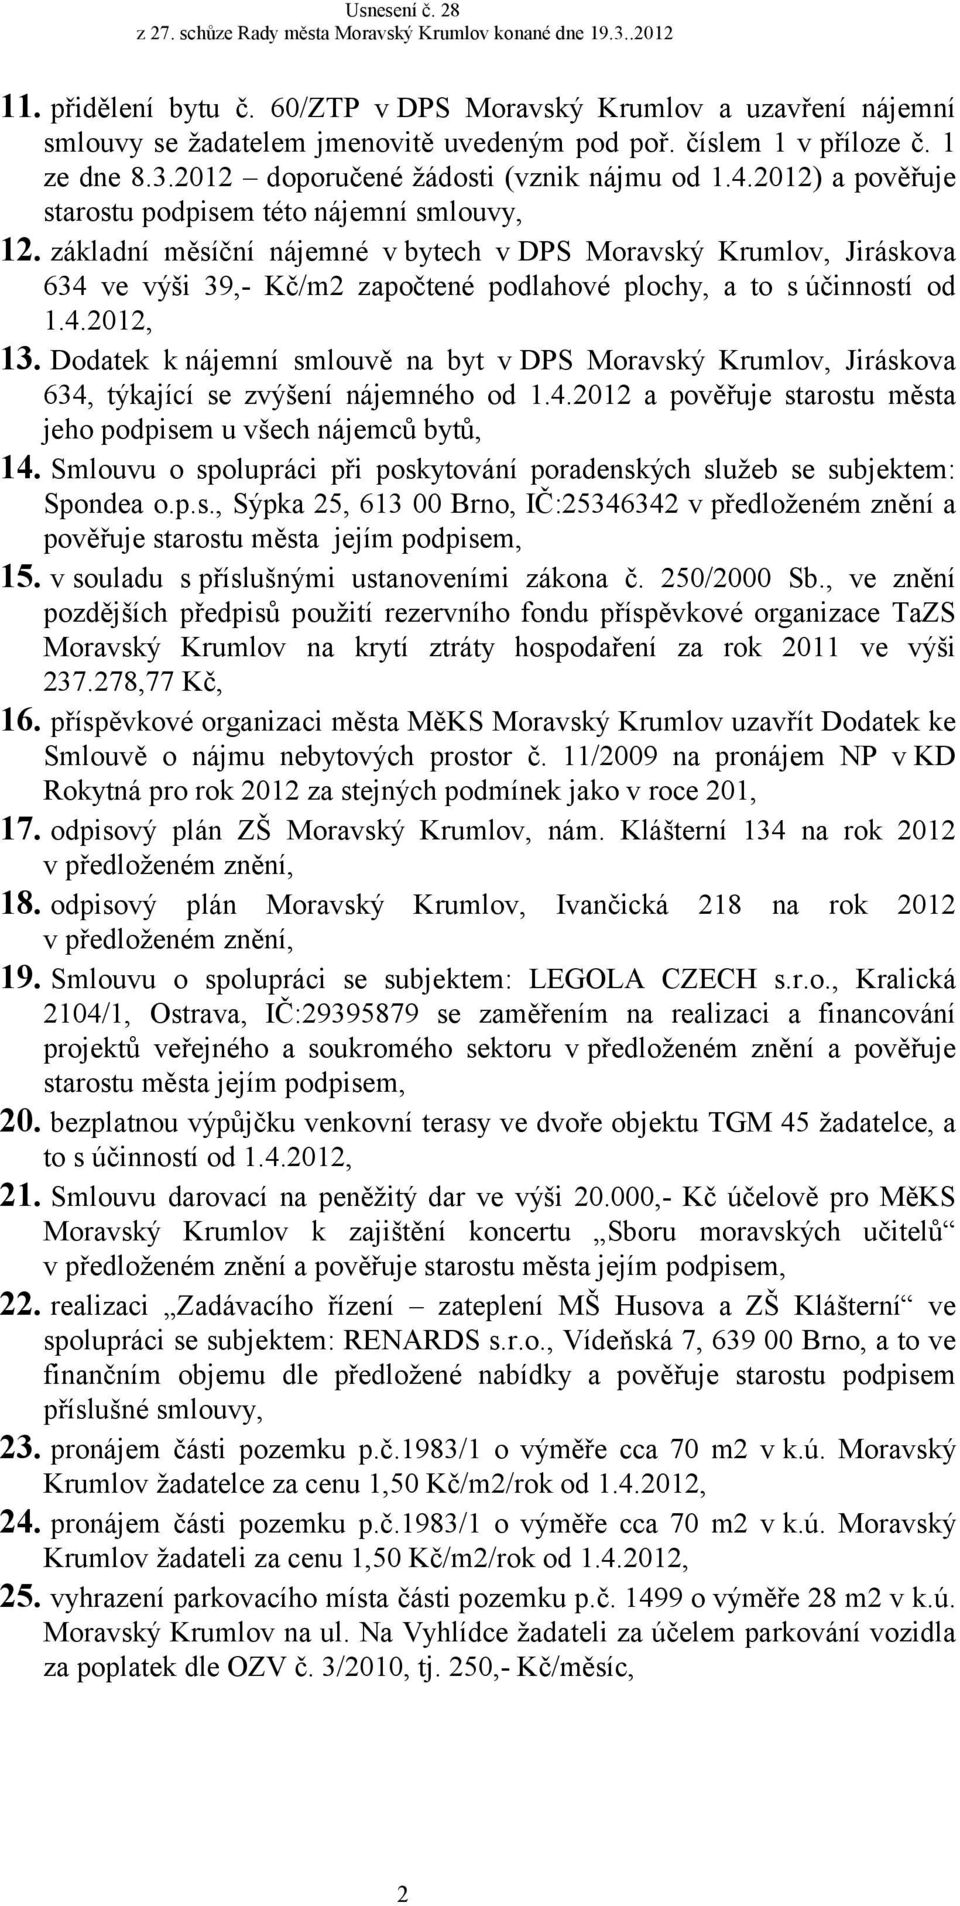 základní měsíční nájemné v bytech v DPS Moravský Krumlov, Jiráskova 634 ve výši 39,- Kč/m2 započtené podlahové plochy, a to s účinností od 1.4.2012, 13.